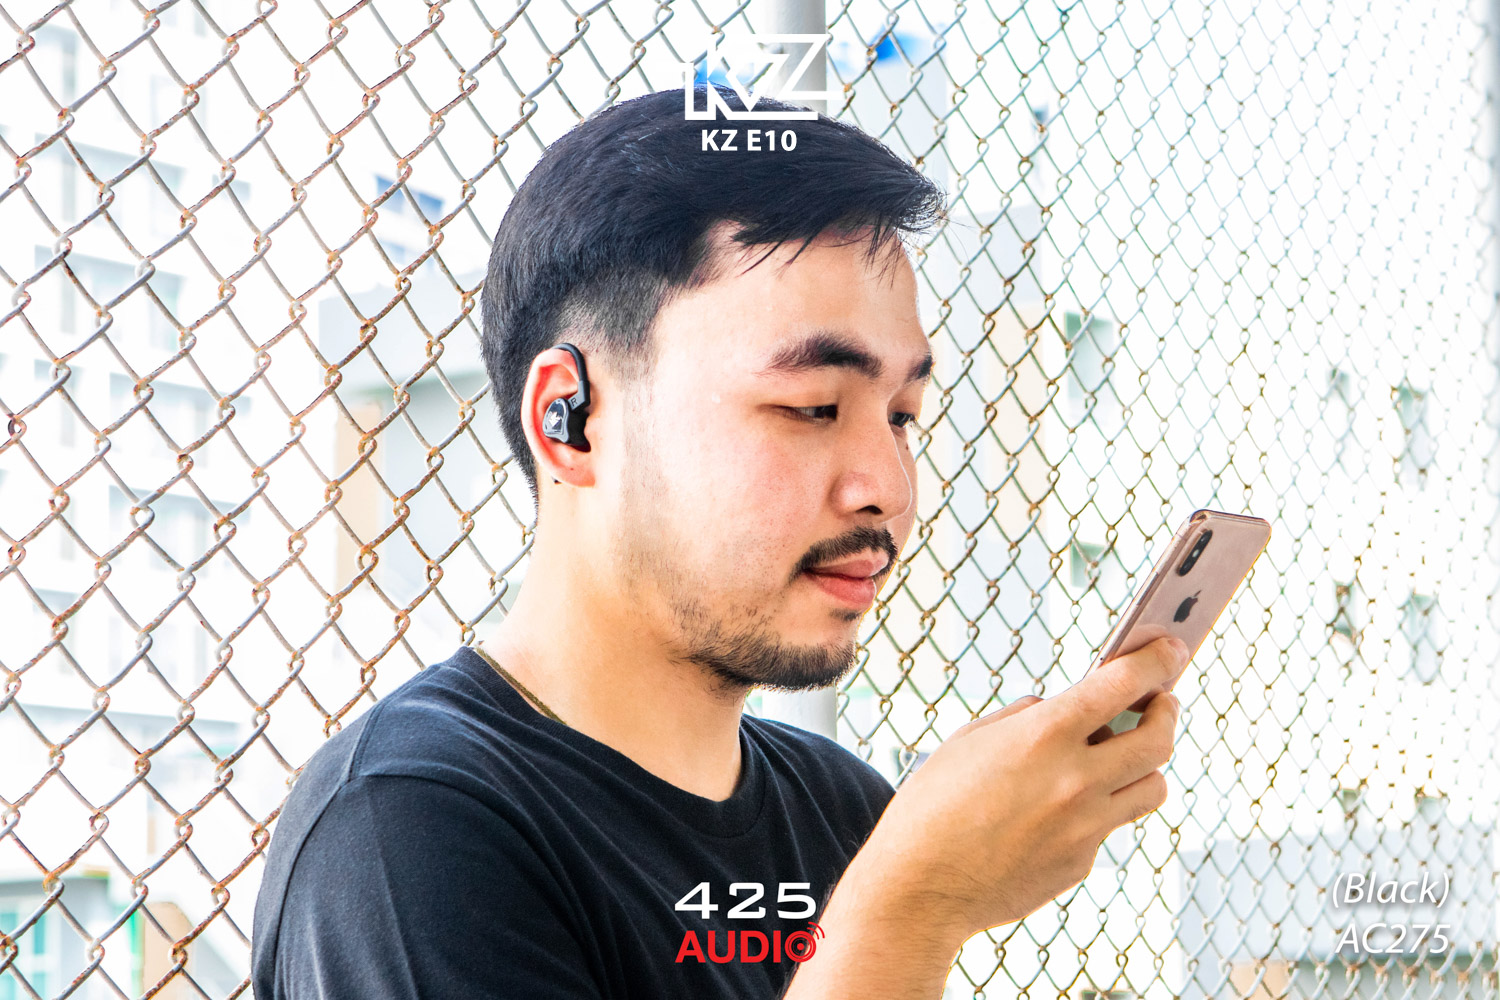 KZ,KZ E10,Hybrid 5 Driver,in ear monitors,หูฟัง,หูฟัง True Wireless,หูฟังไร้สาย,wireless earphone